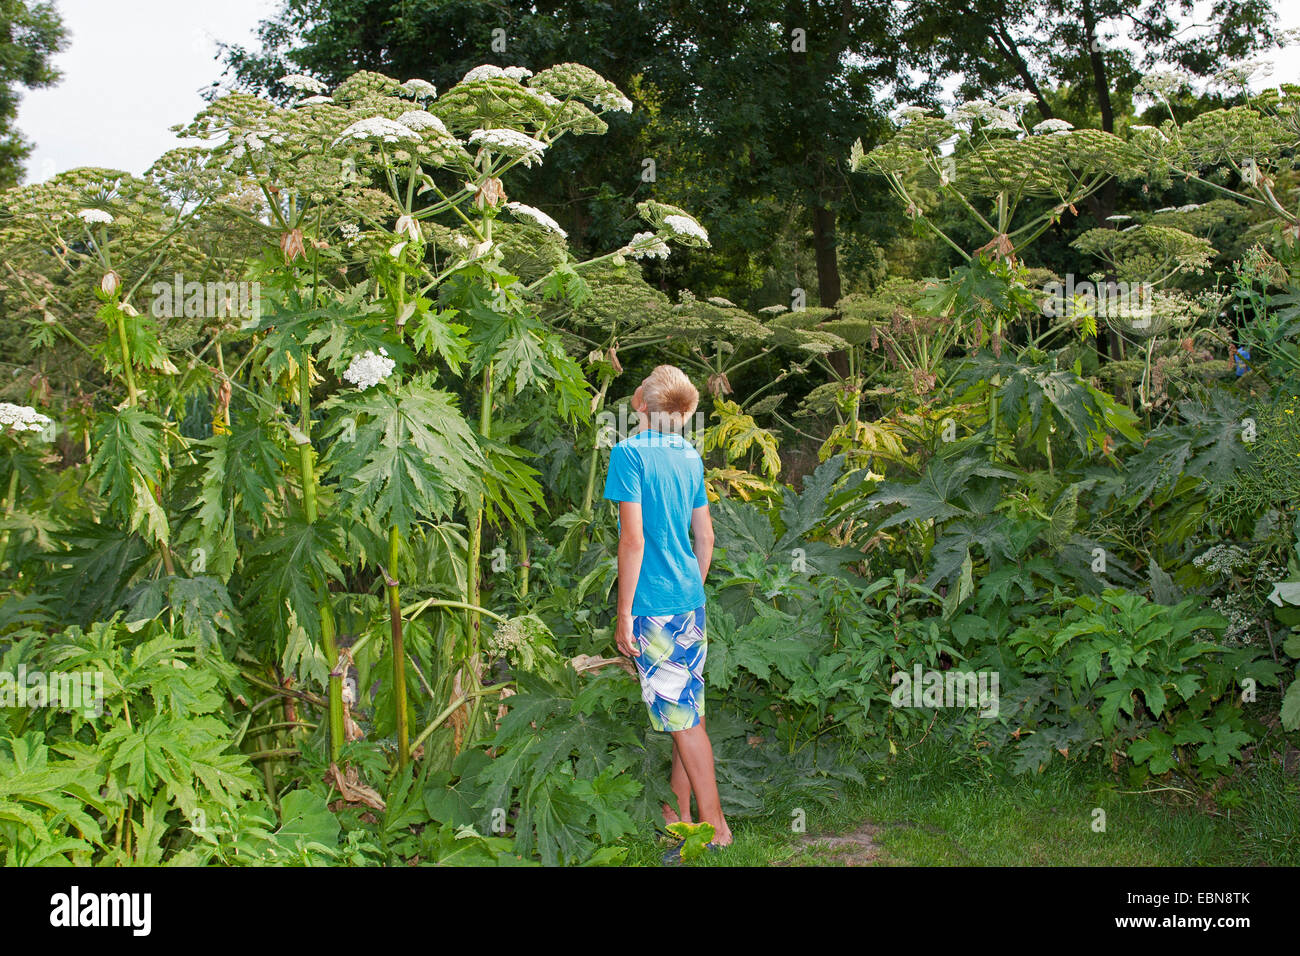 Riesenbärenklau (Heracleum Mantegazzianum), blühende Pflanzen mit jungen als Größe Vergleich, Deutschland Stockfoto